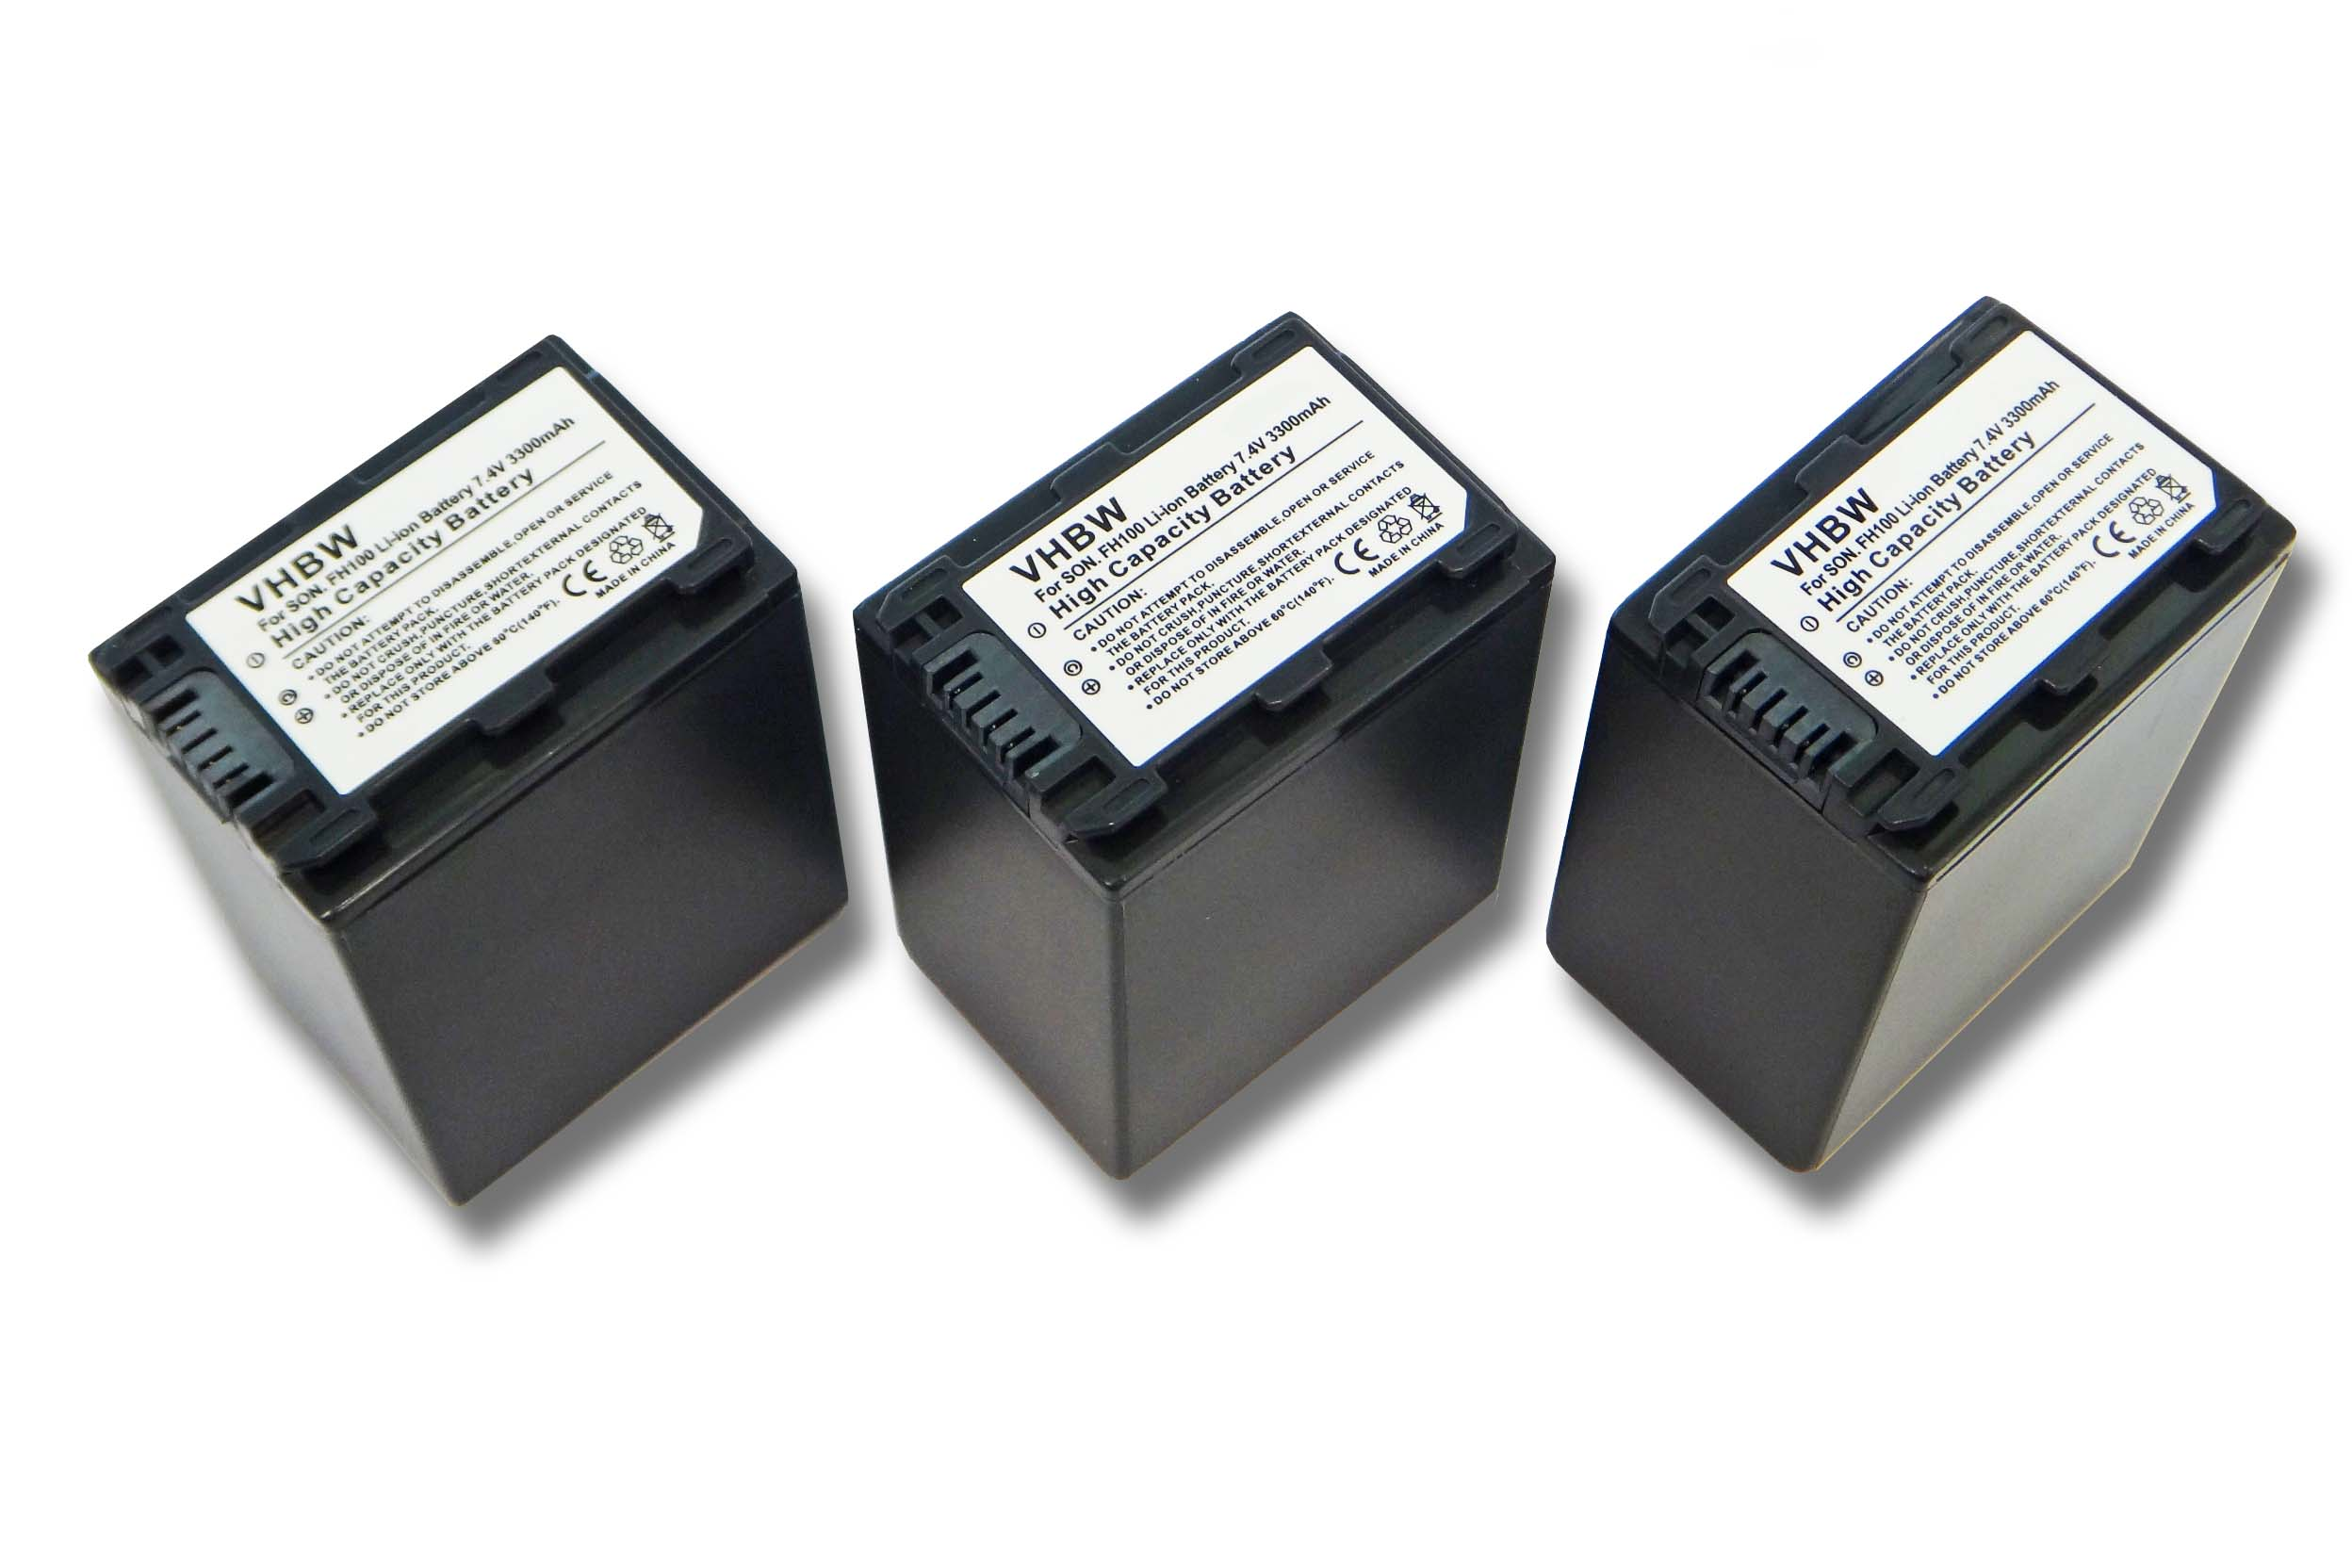 VHBW kompatibel mit 3300 Volt, DCR-DVD106(E), DCR-DVD110(E), DCR-DVD109(E), - DCR-DVD115(E) Li-Ion Videokamera, Sony Akku 7.4